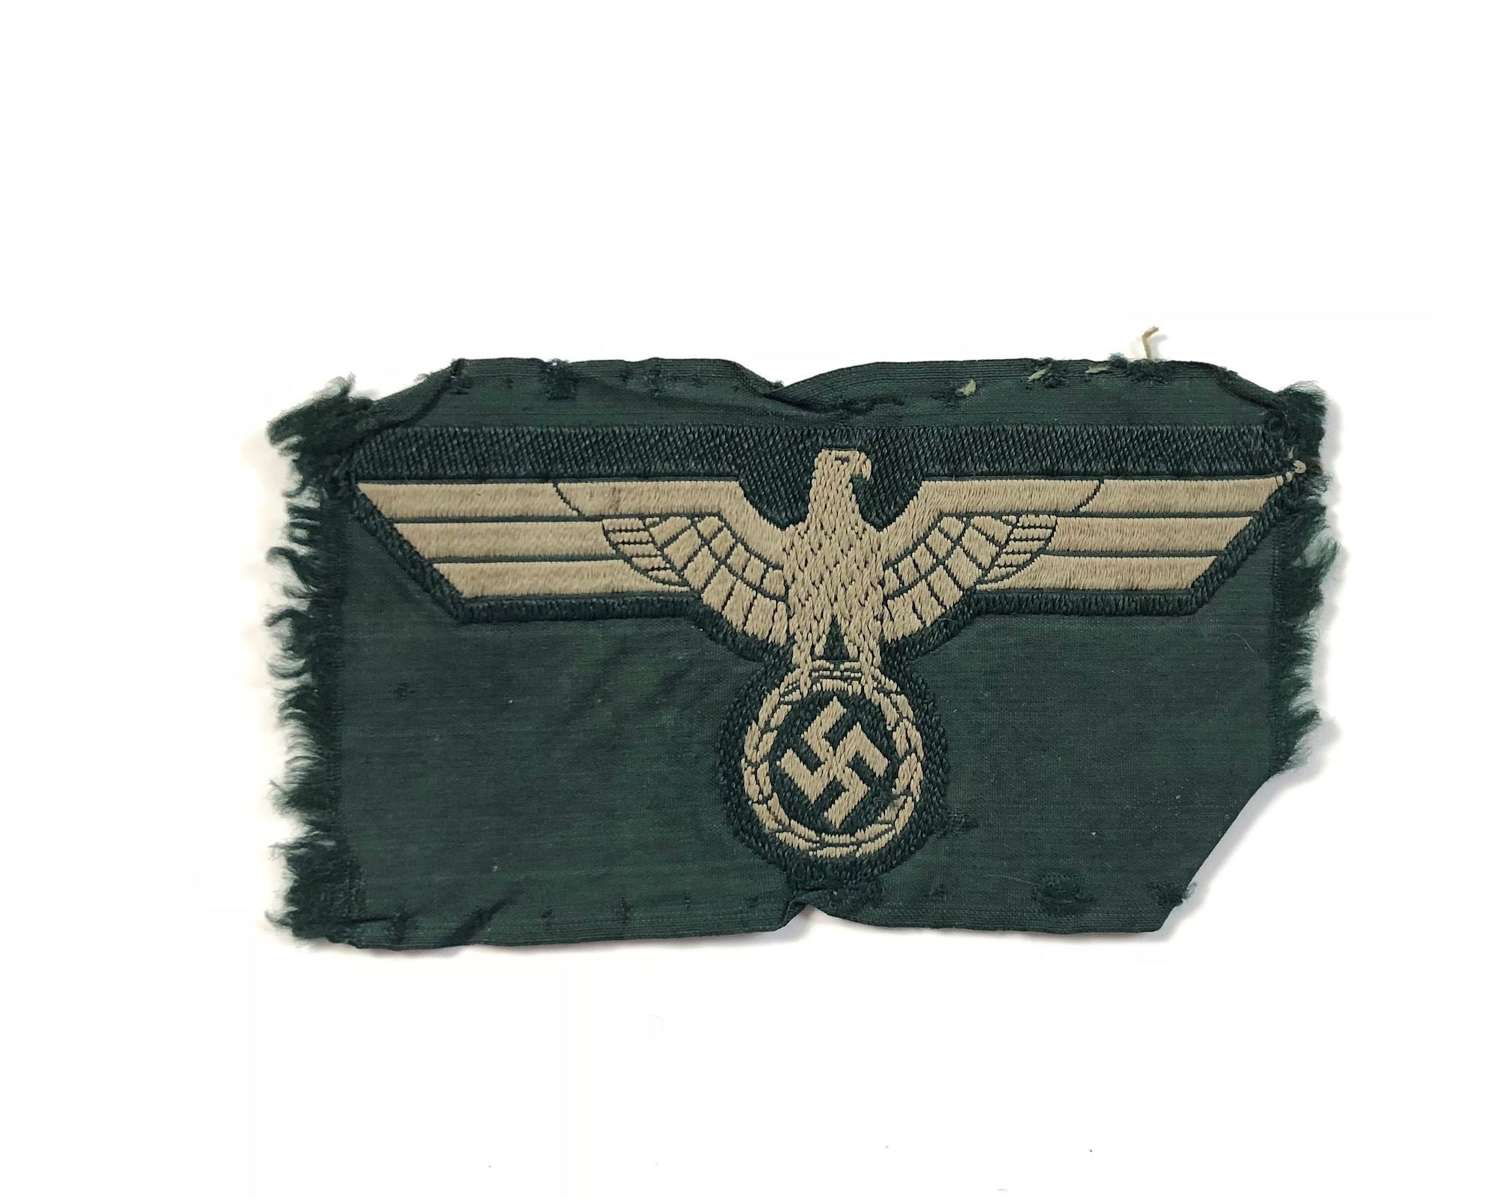 WW2 German Army Breast Eagle.